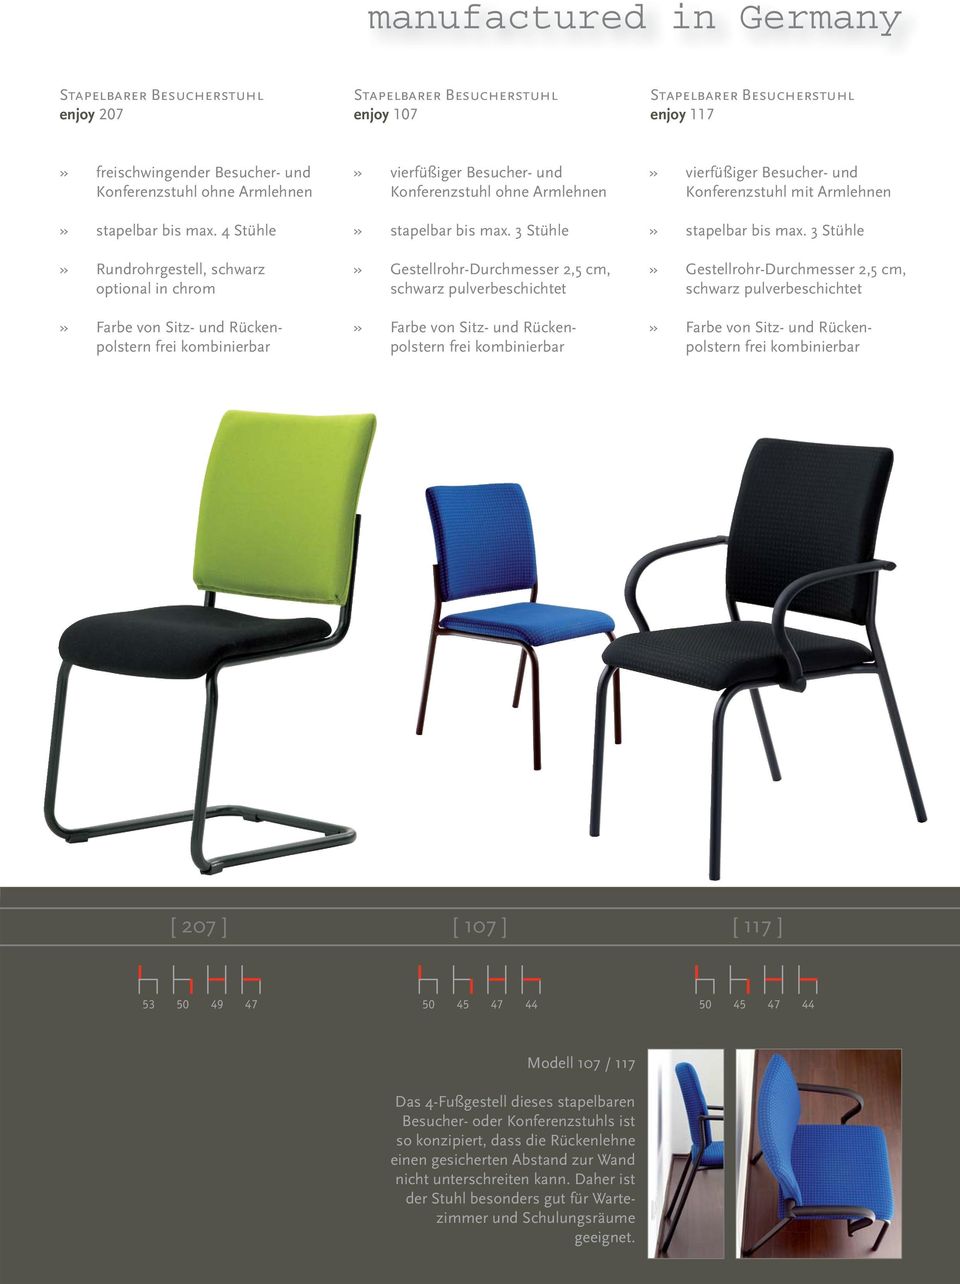 3 Stühle» Gestellrohr-Durchmesser 2,5 cm, schwarz pulverbeschichtet» vierfüßiger Besucher- und Konferenzstuhl mit Armlehnen» stapelbar bis max.